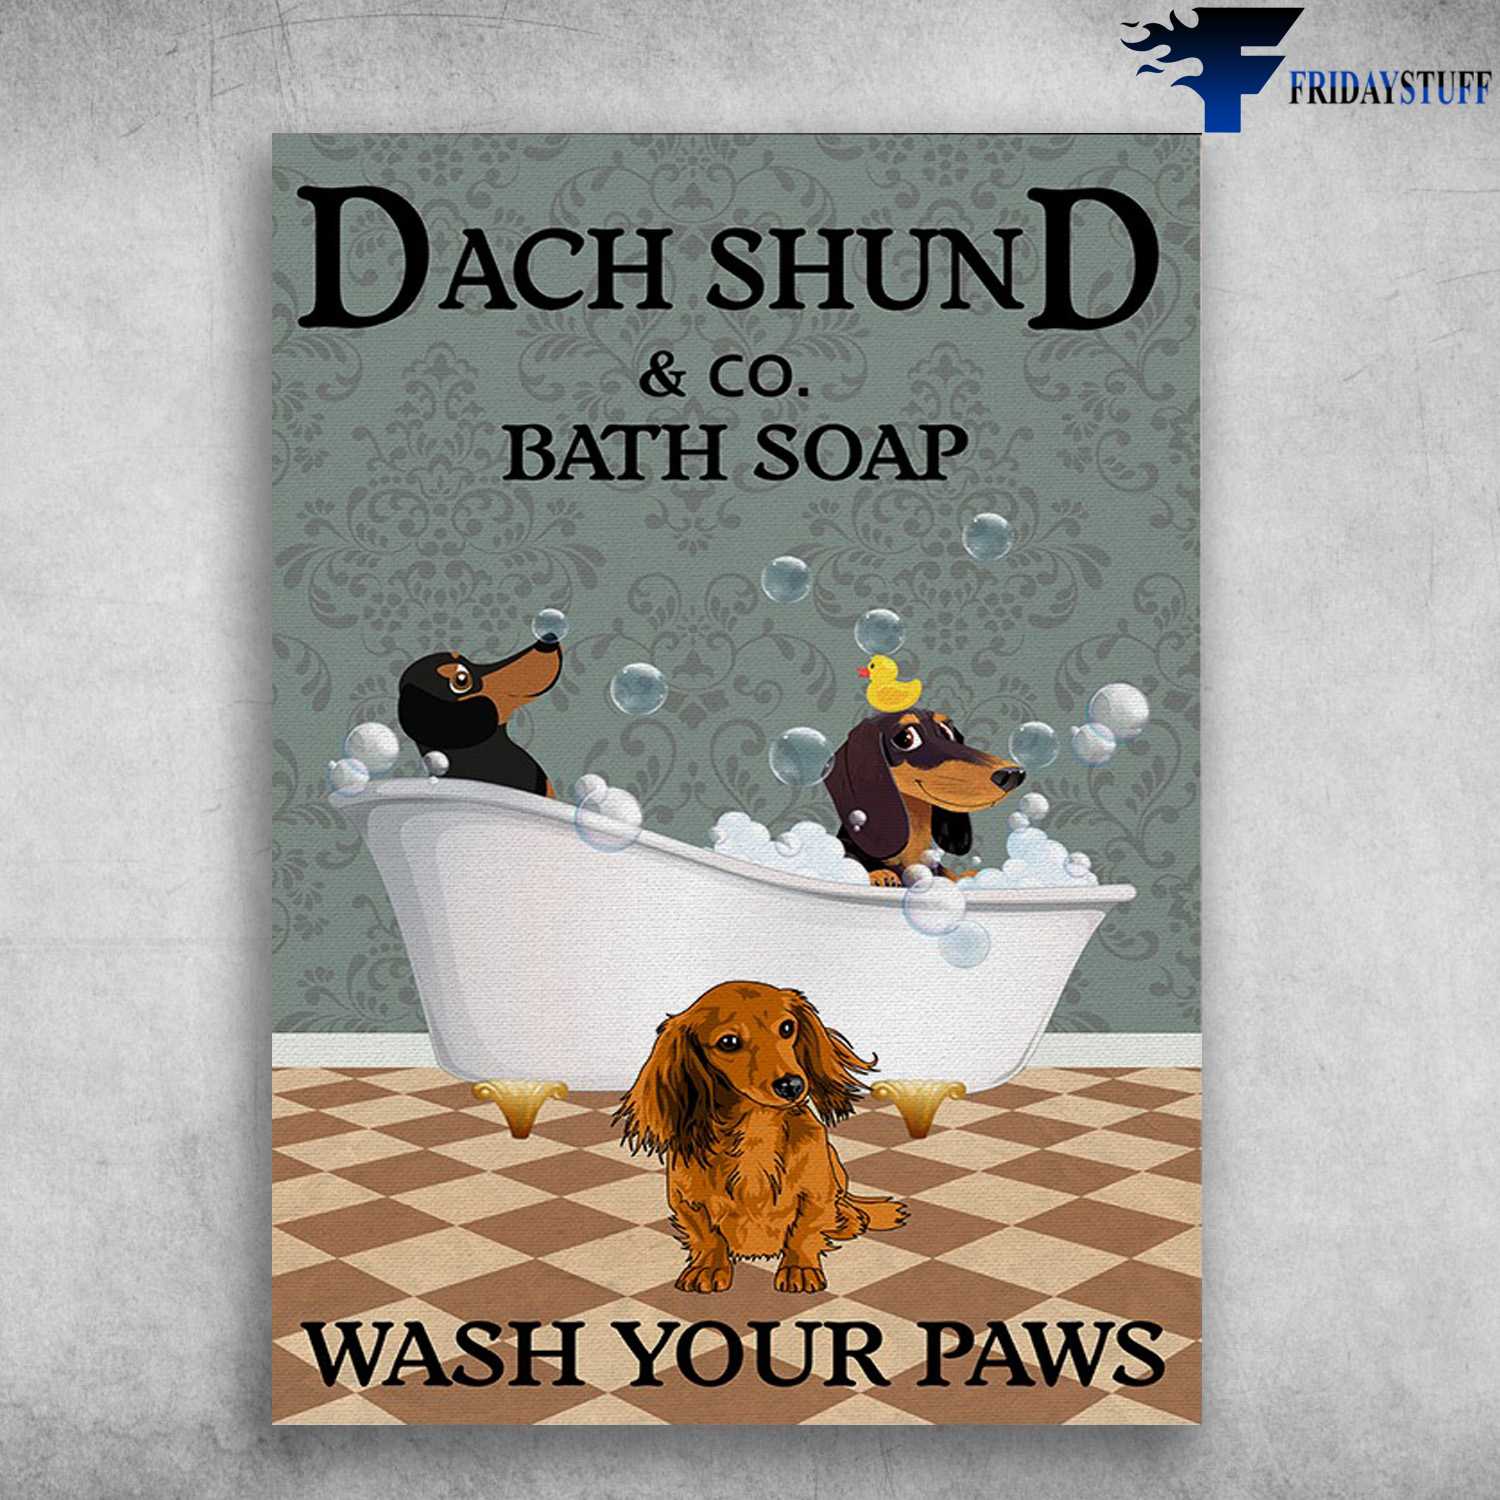 Dachshund Dog, Bath Soap - Dach Shund And CO. Bath Soap, Wash Your Paws